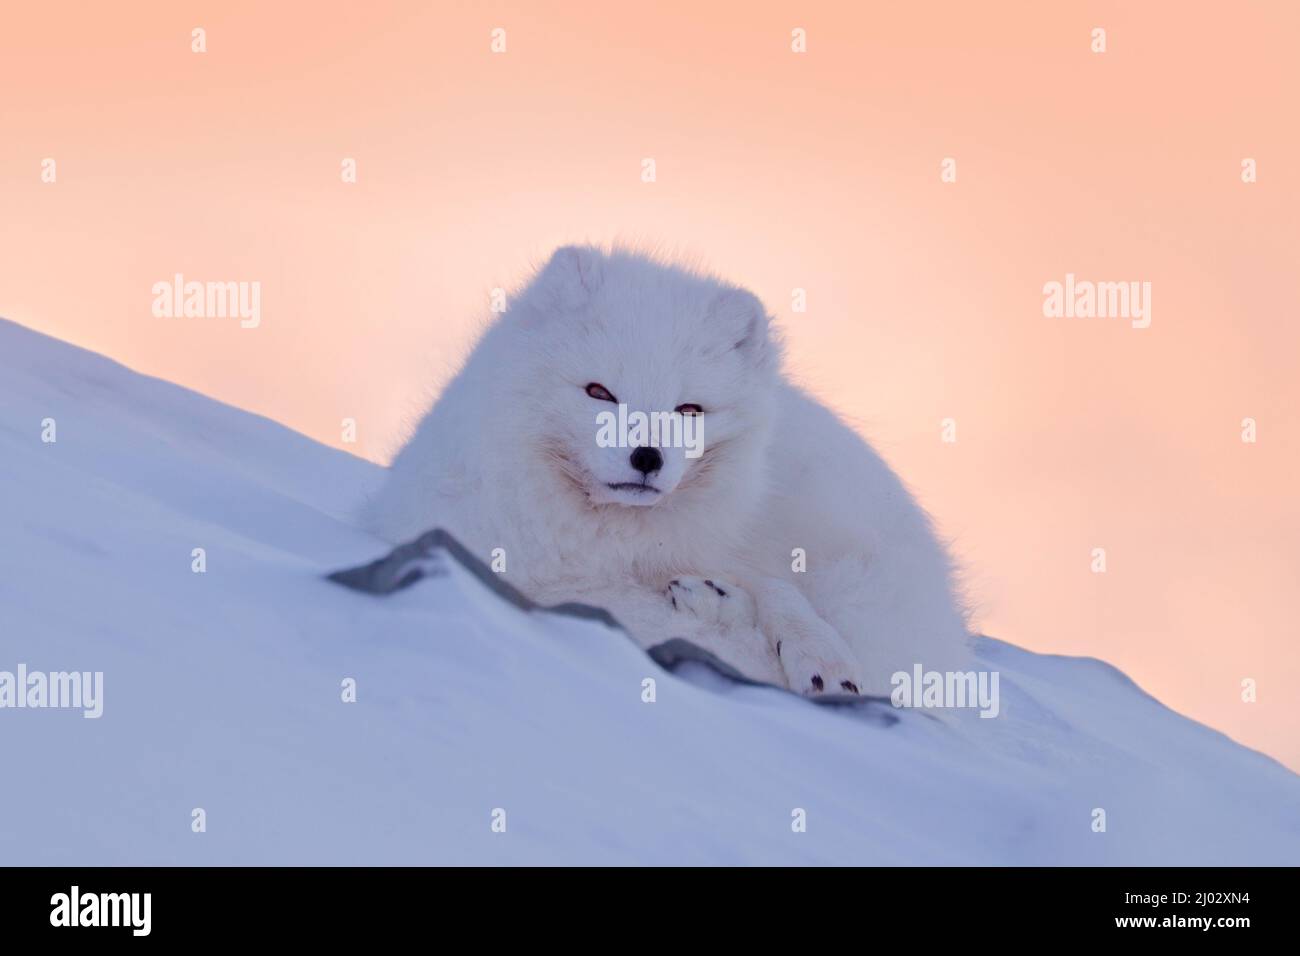 Renard polaire dans son habitat, paysage d'hiver, Svalbard, Norvège. Magnifique animal blanc dans la neige. Scène d'action de la faune de la nature, Vulpes lagopus, visage Banque D'Images